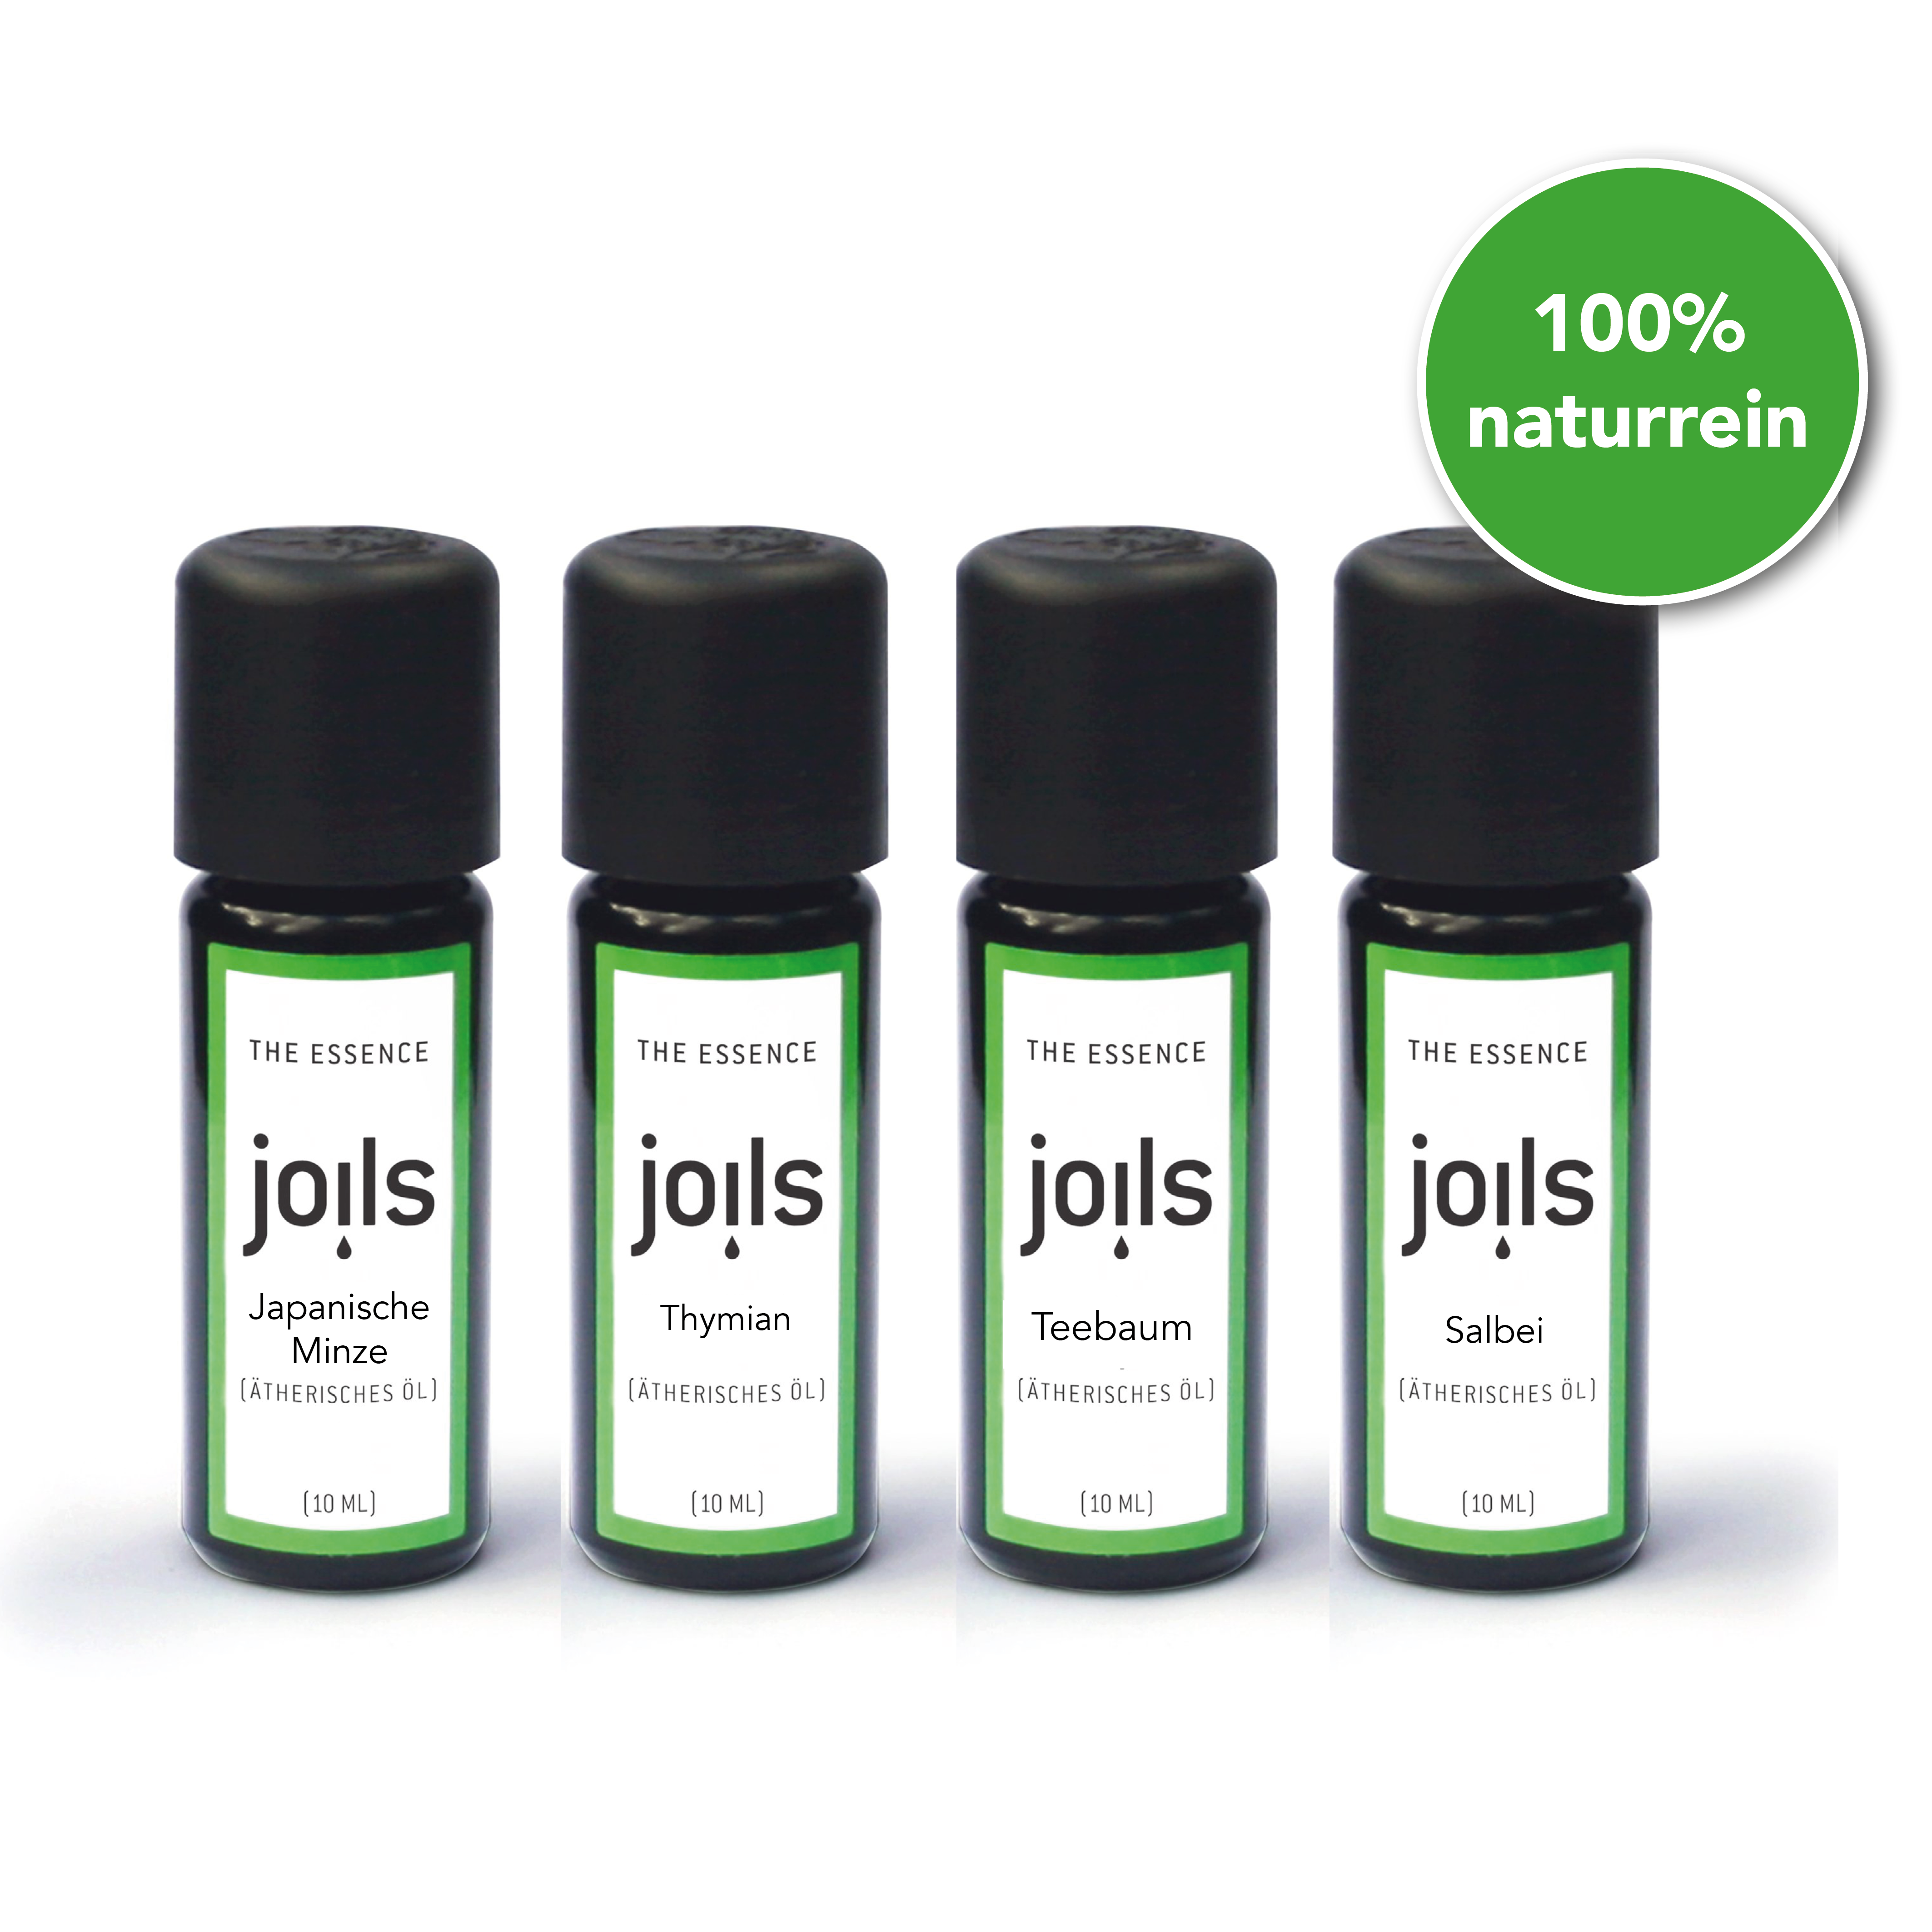 Antibacterial set of natural oils